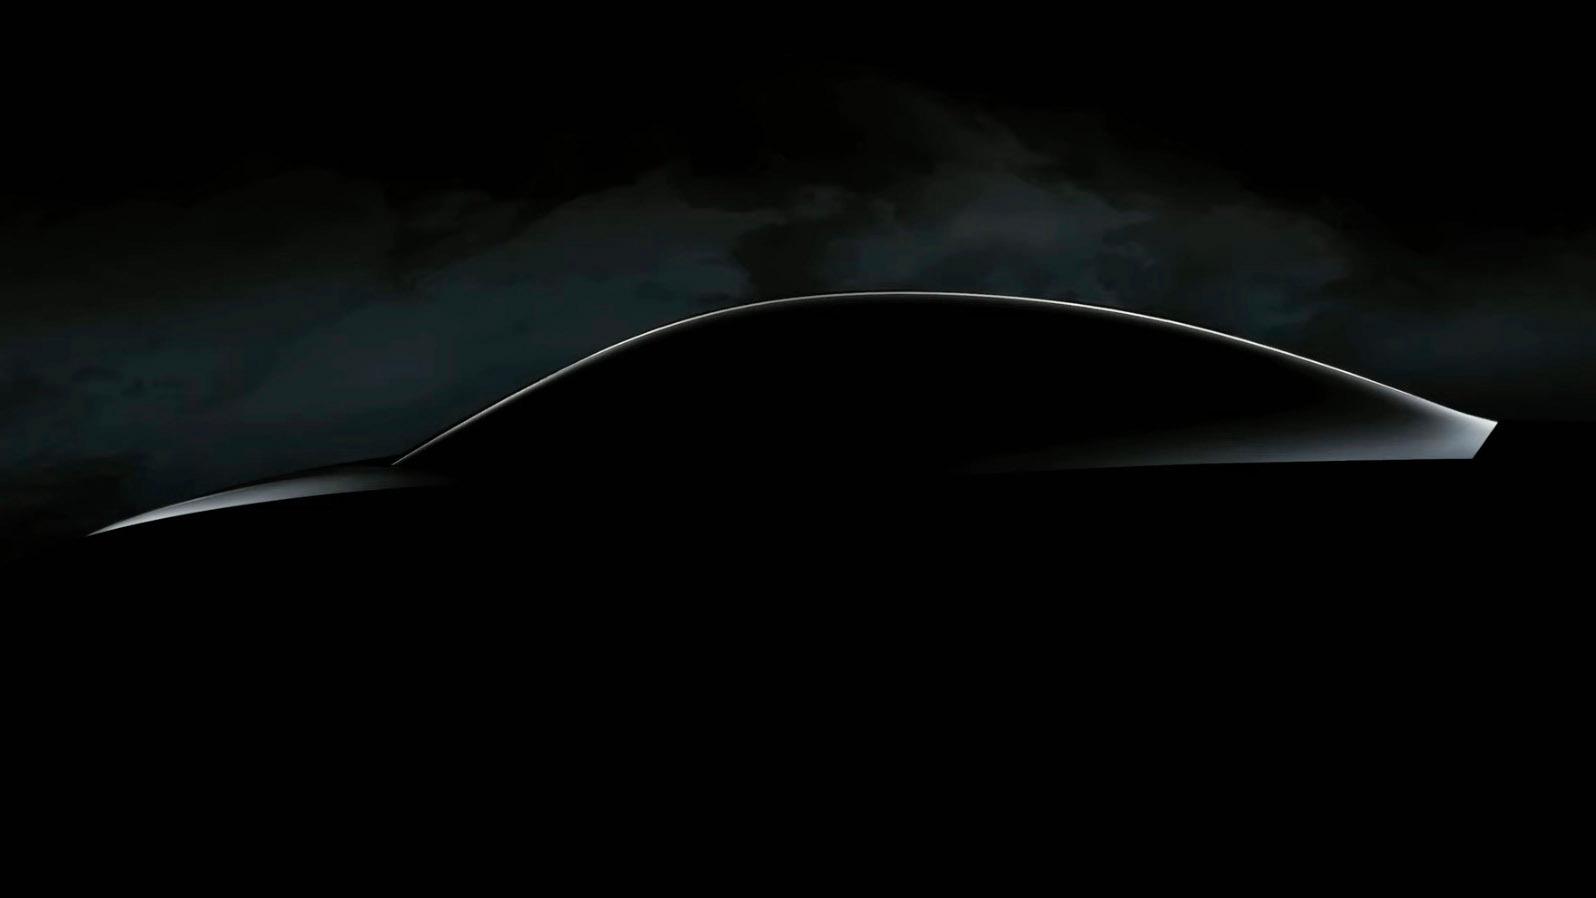 Tesla «teaset» silhouetten til en ny modell på investormøtet sitt denne uken. Det er ventet at det dreier seg om den nye «billigmodellen» som mange har kalt Model 2. 